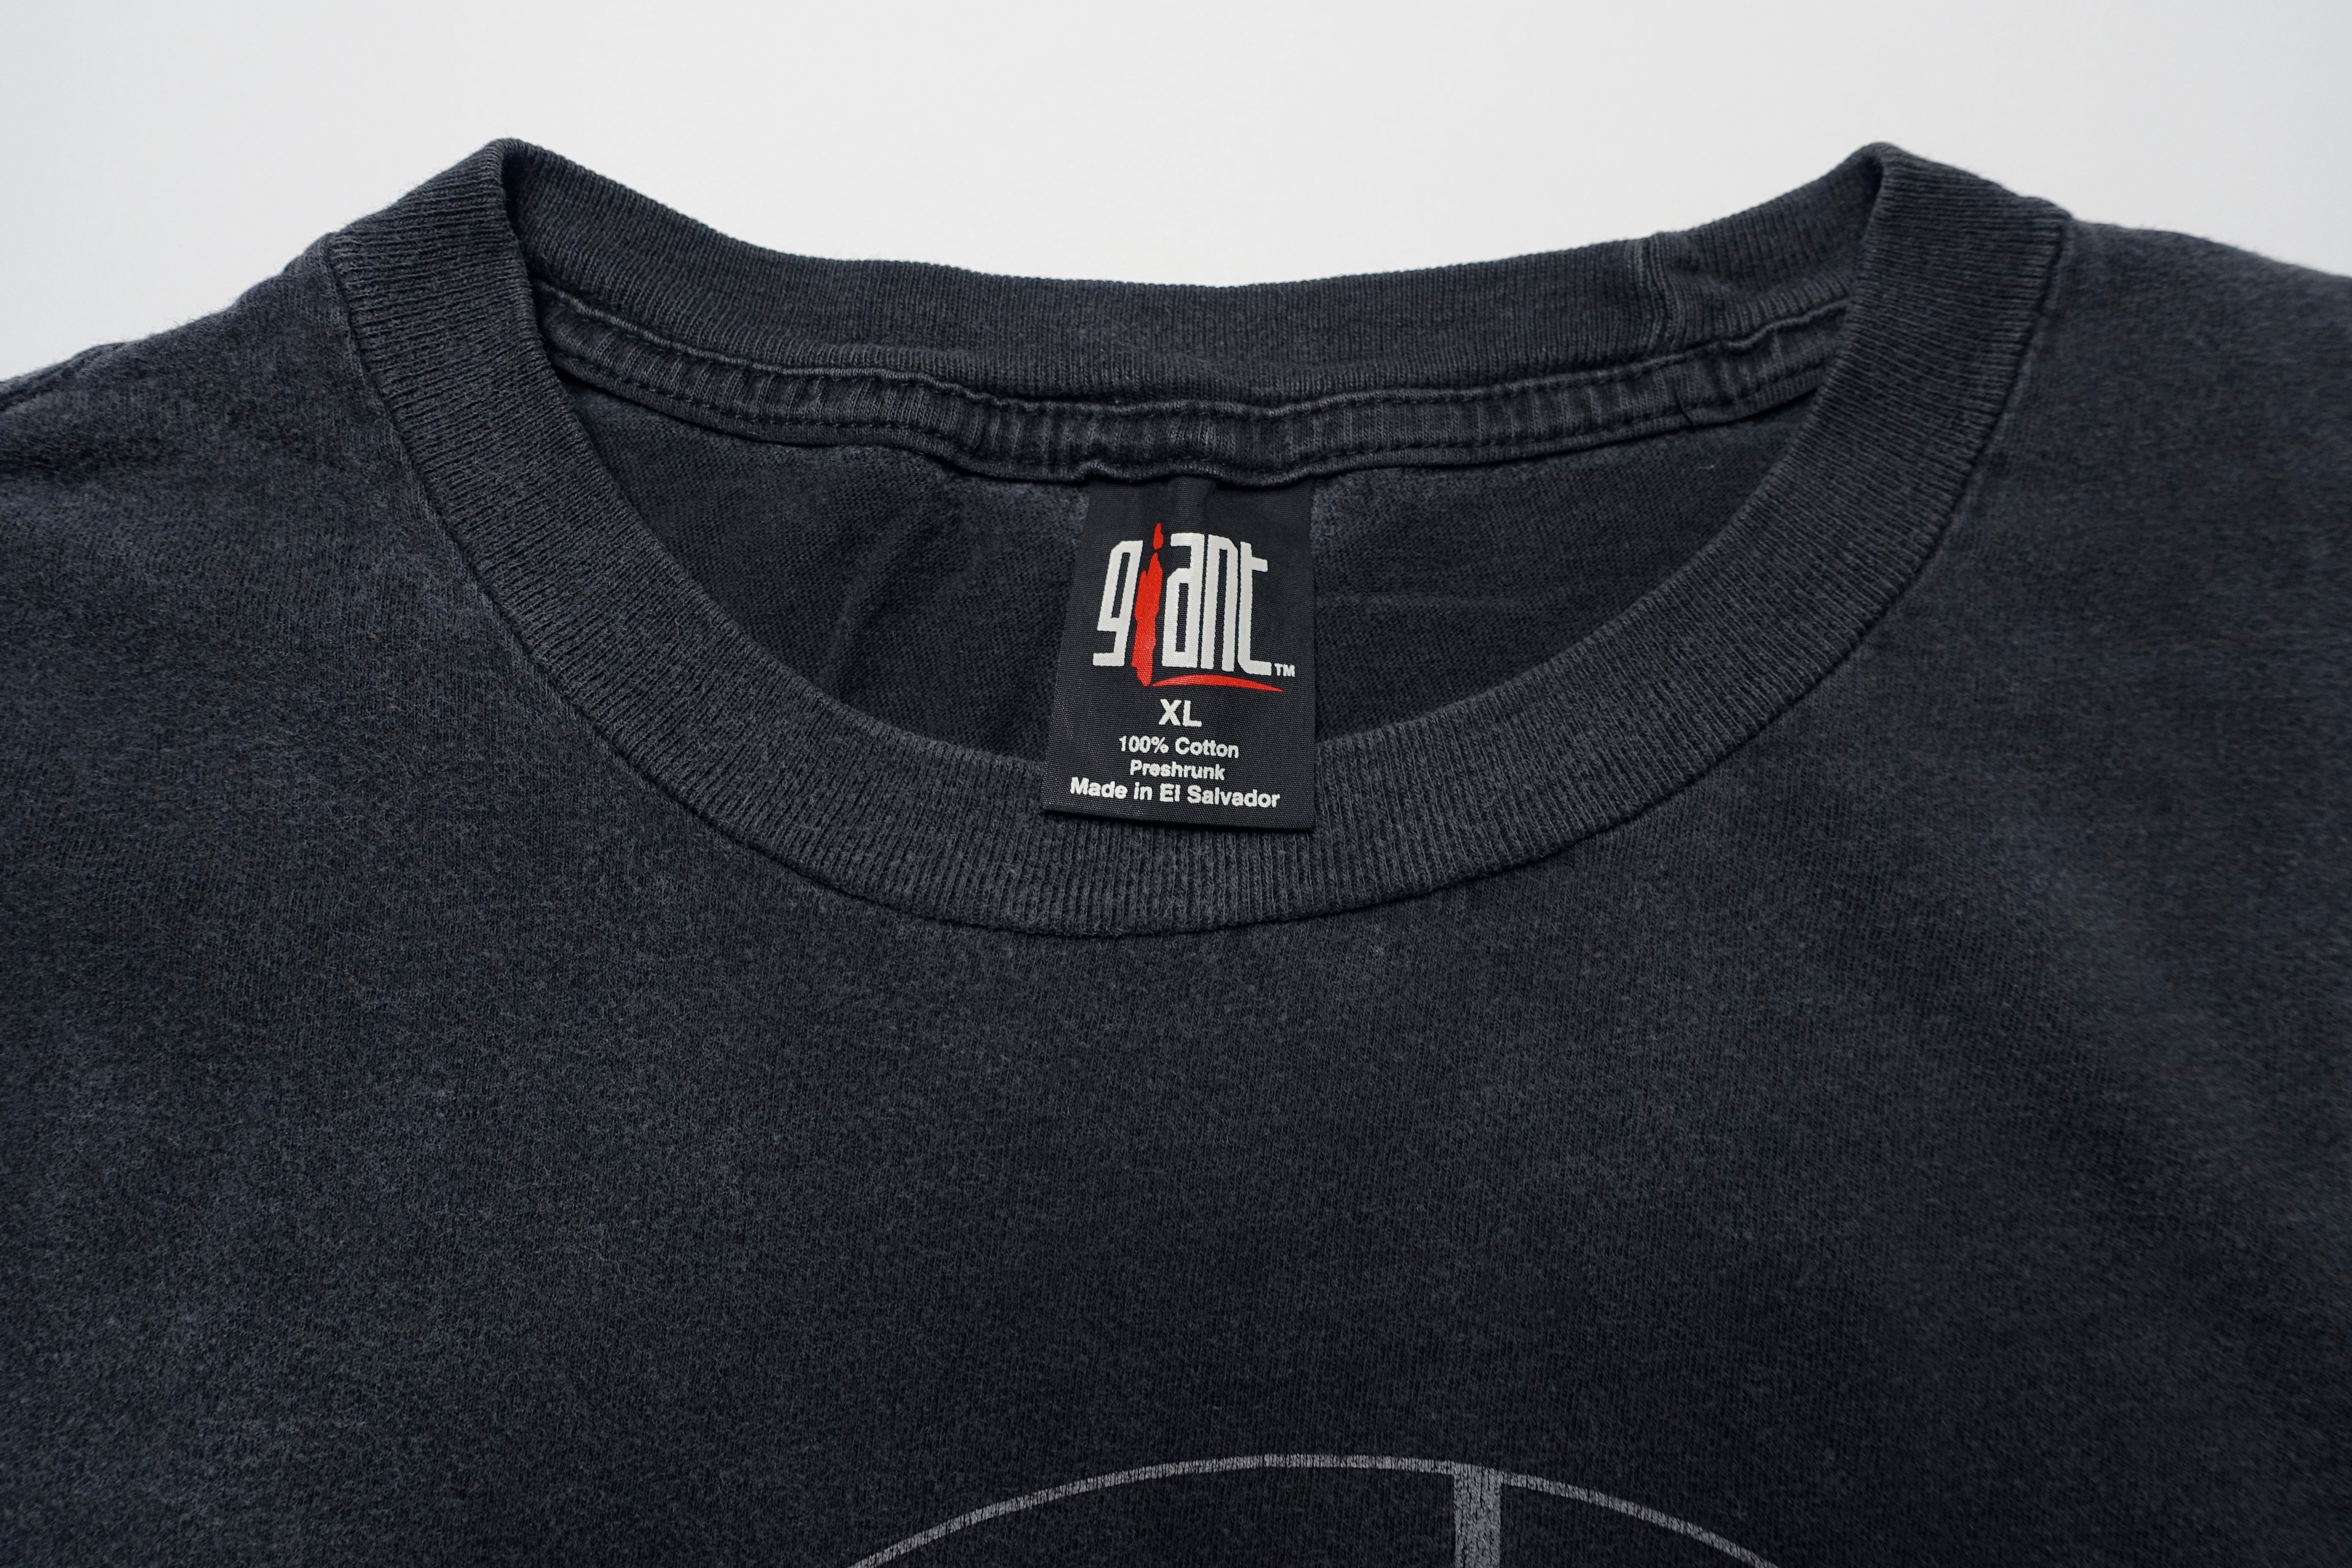 Bauhaus - Face #1 Tour Shirt Size XL